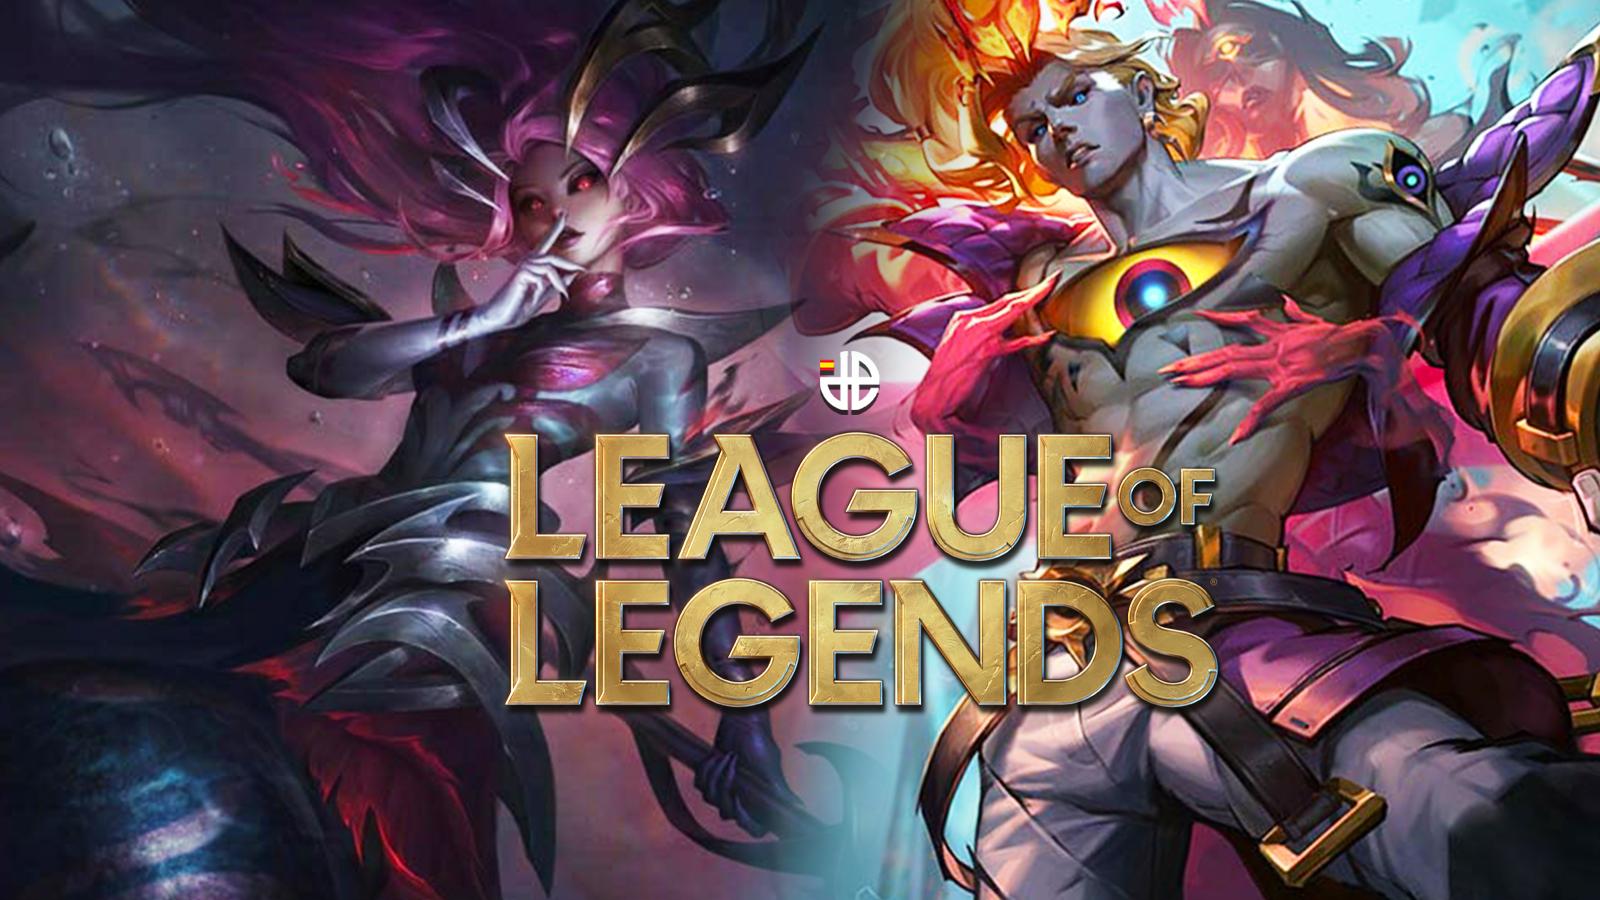 personajes populares league of legends